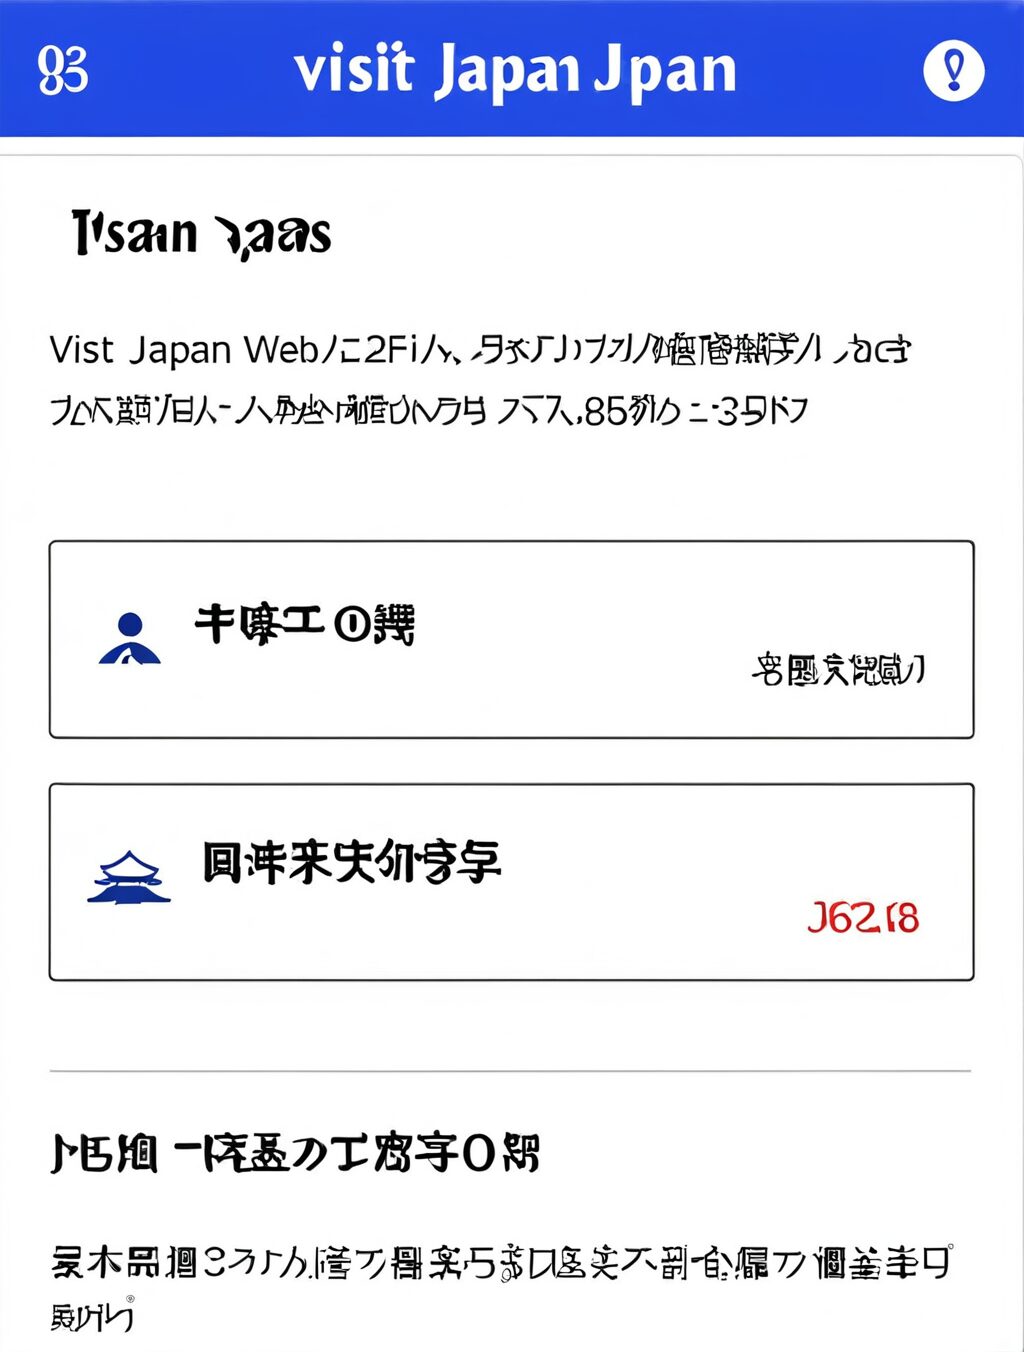 visit japan web 登録しないとどうなる